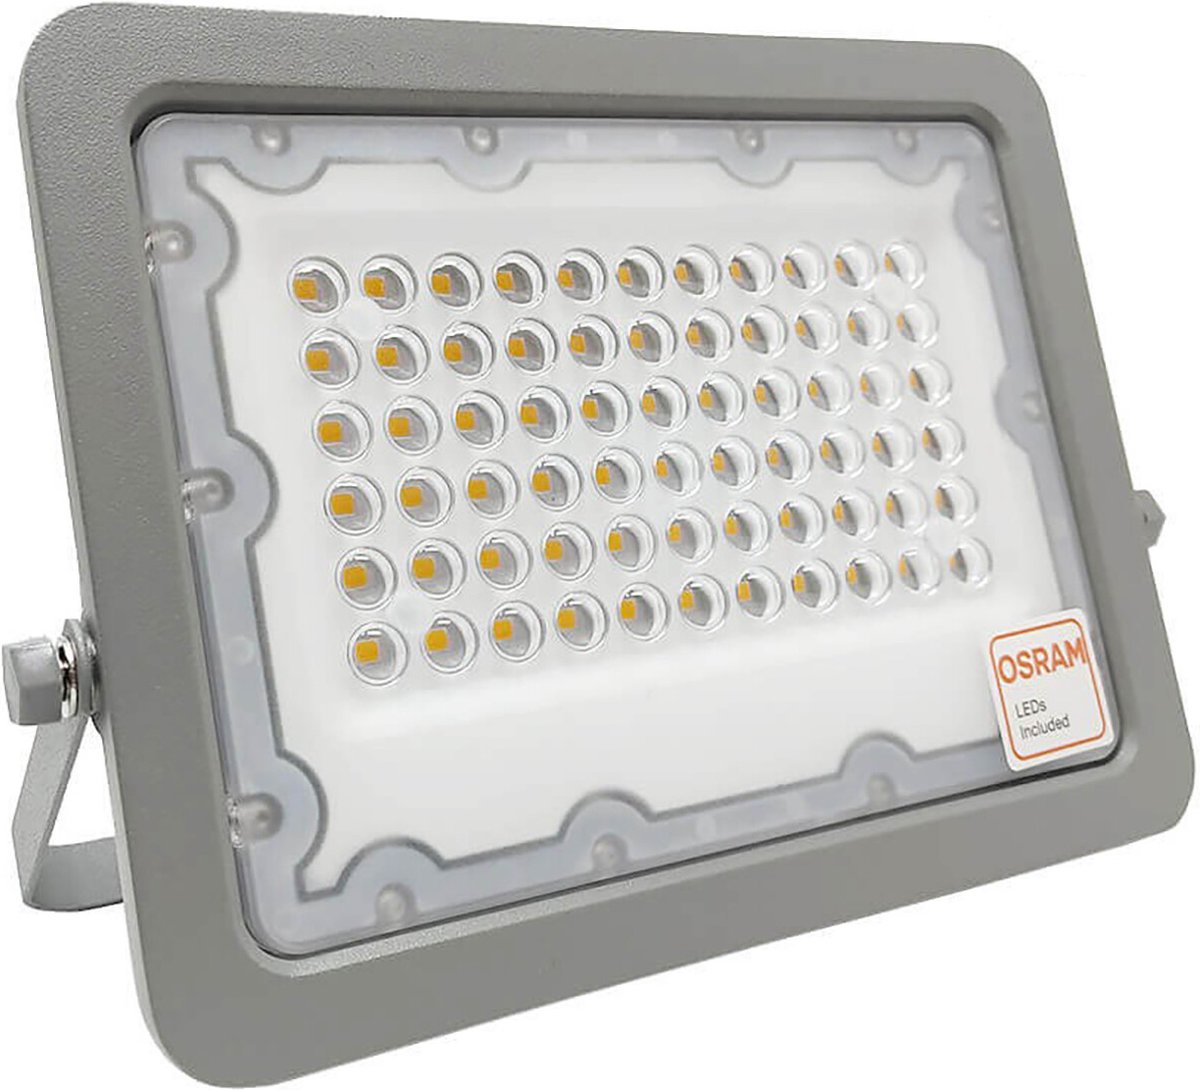 LED Bouwlamp - 50 Watt - LED Schijnwerper - Helder/Koud Wit 6000K - Waterdicht IP65 - 120LM/W - Flikkervrij - OSRAM LEDs